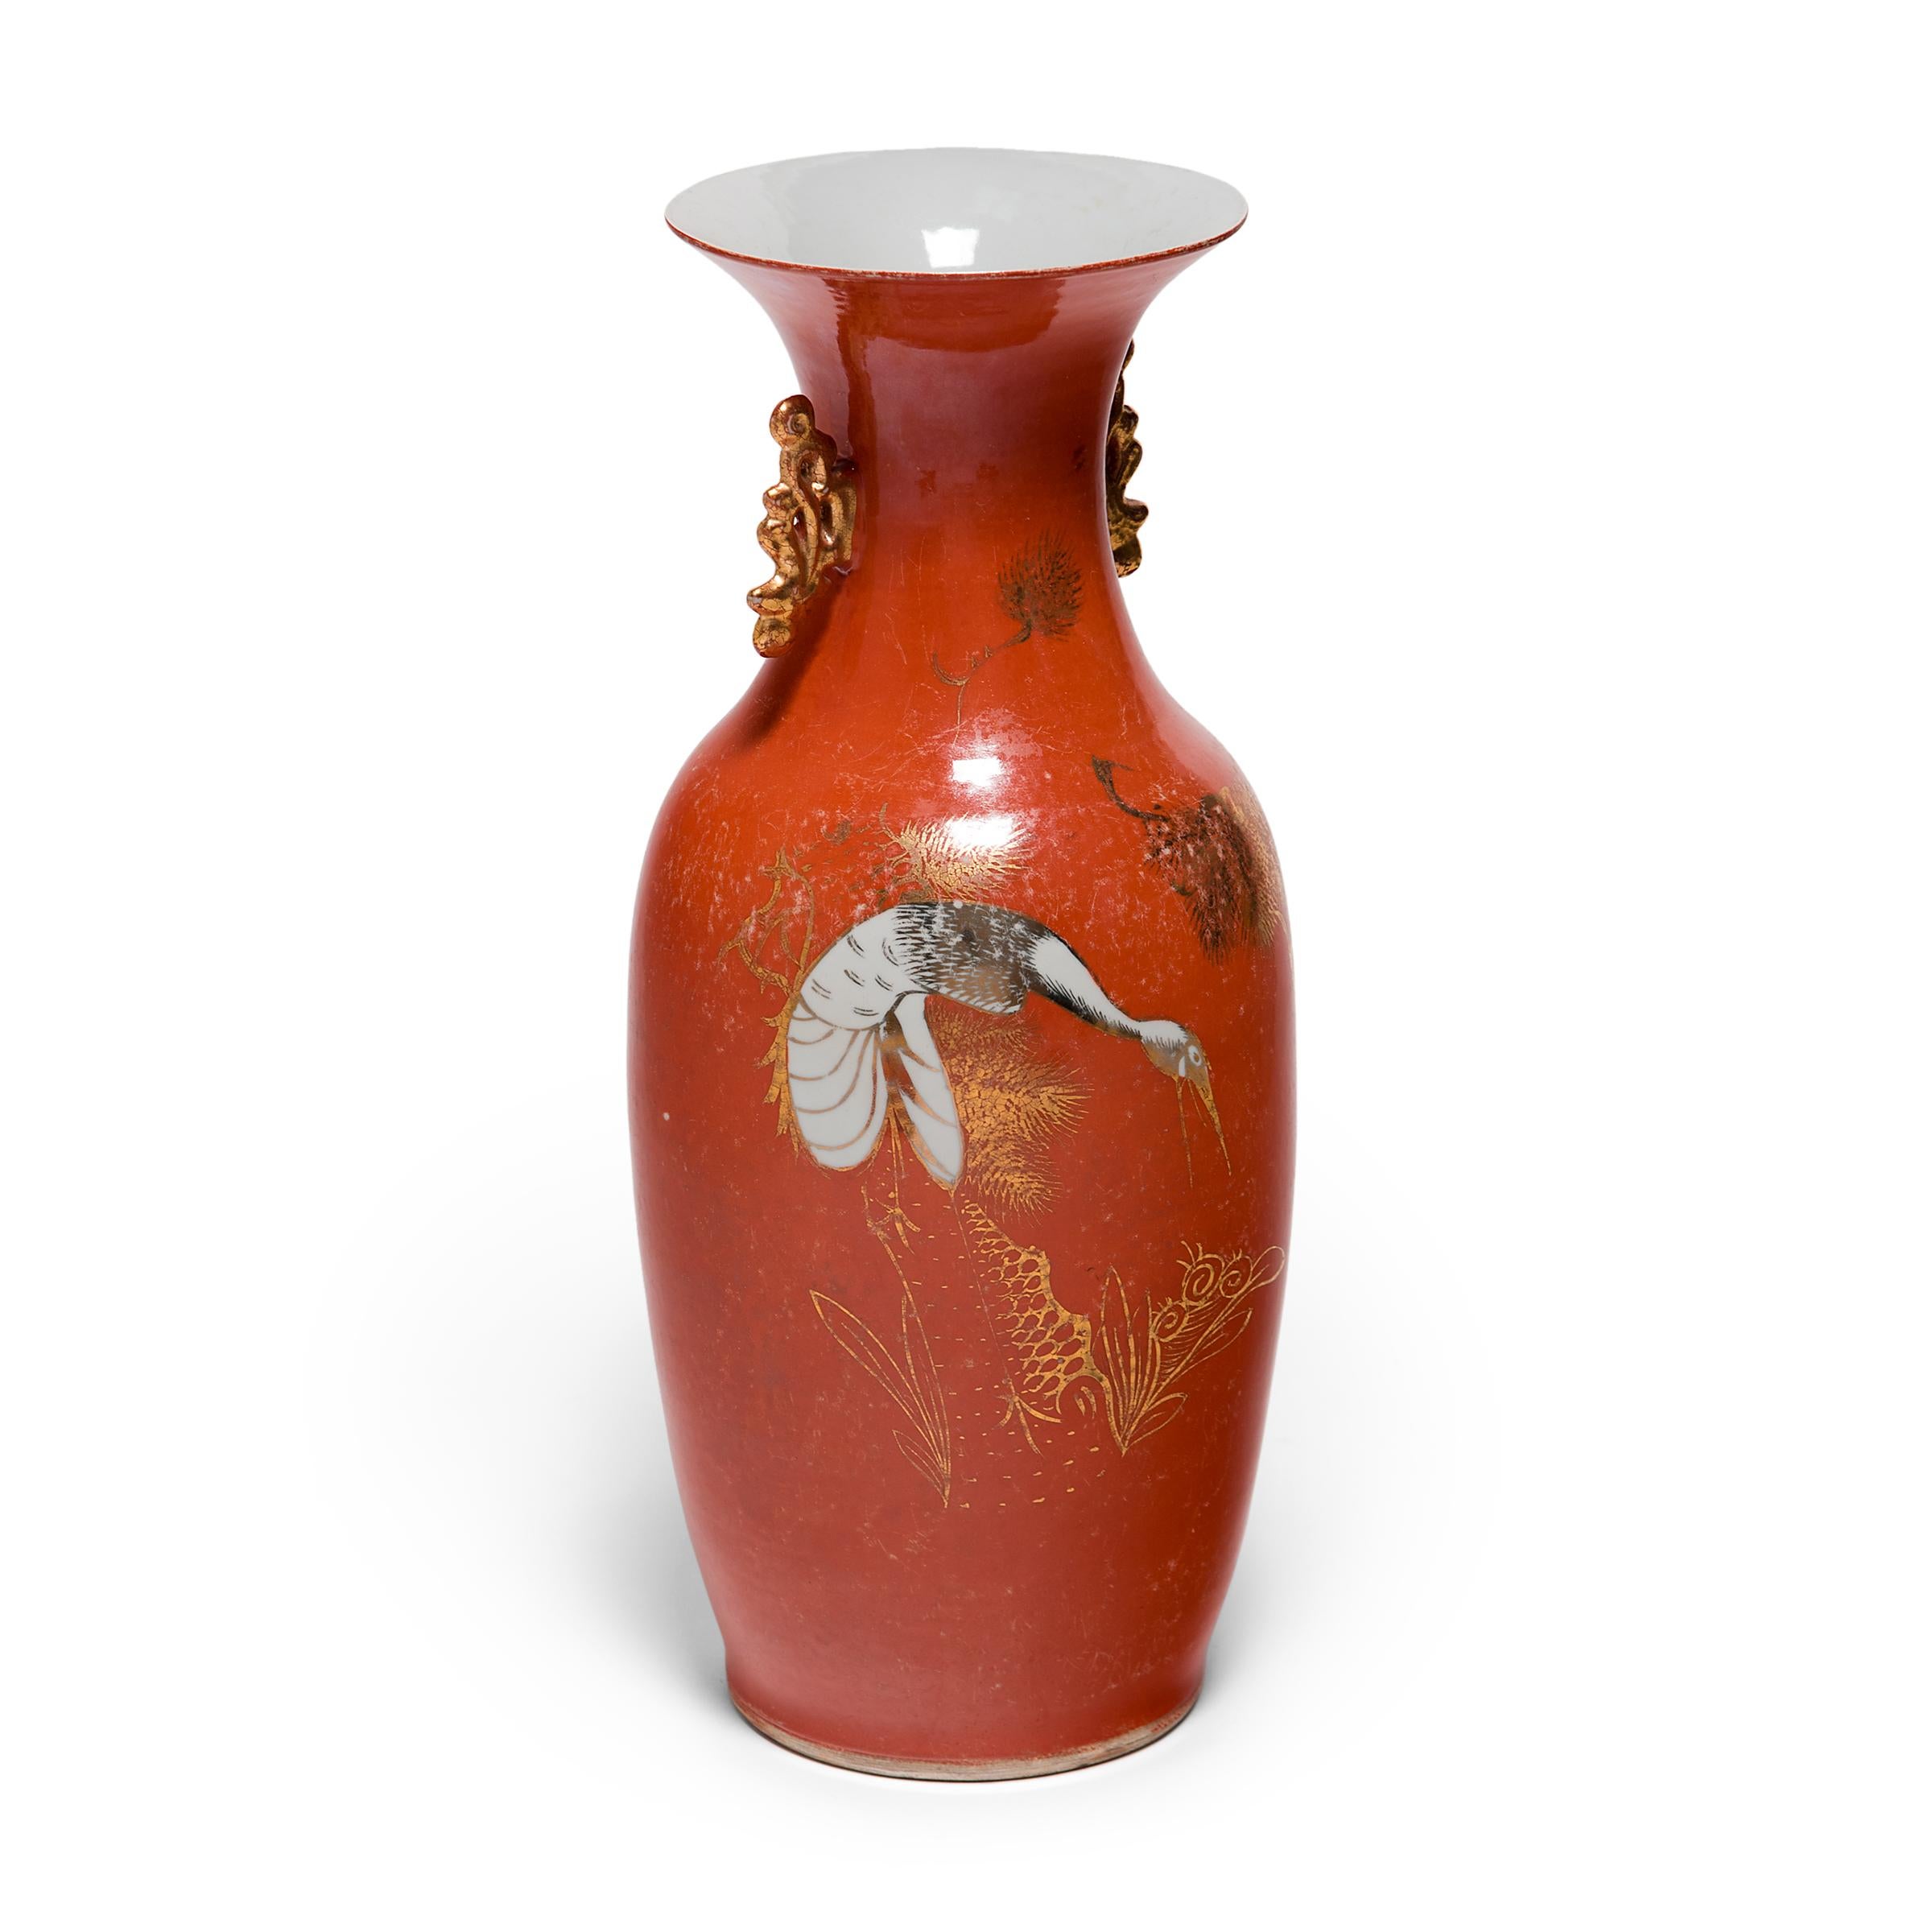 S'inspirant de la forme durable de la queue du phénix qui remonte à l'âge du bronze en Chine, ce vase en porcelaine des années 1920 présente les lignes sinueuses et le raffinement doré qui ont contribué à définir le style Art déco du début du XXe